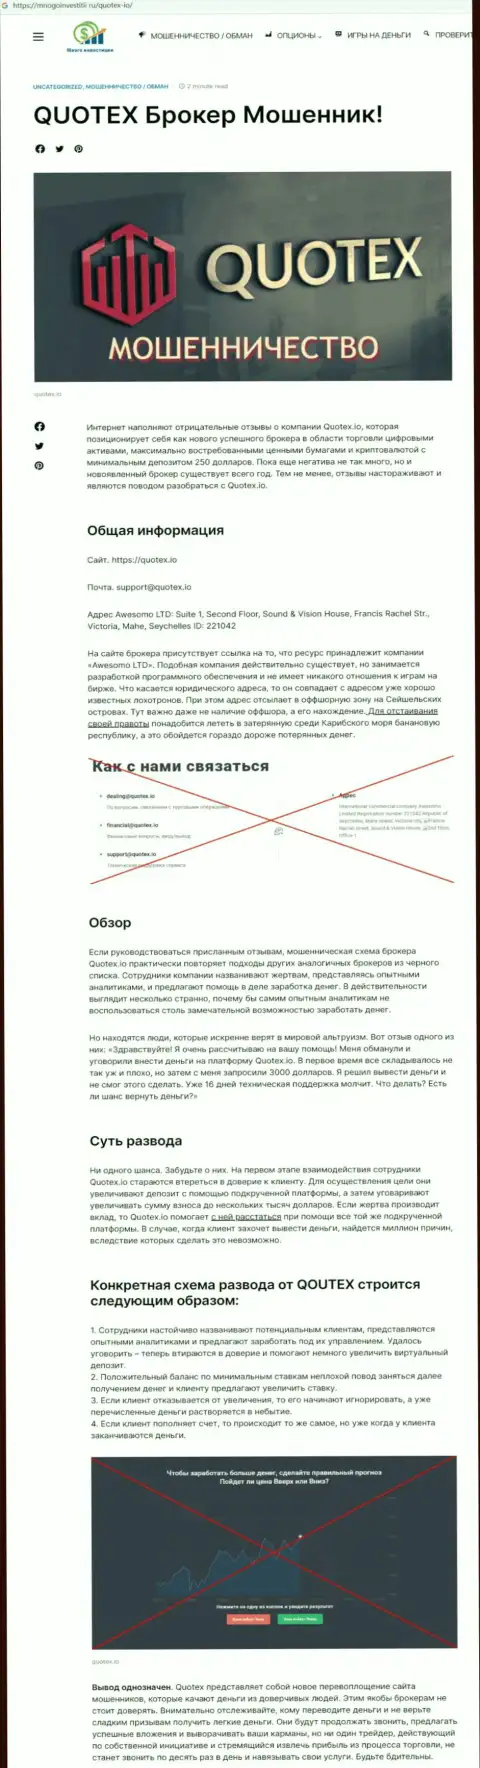 Обзор махинаций скам-проекта Quotex - это МОШЕННИКИ !!!